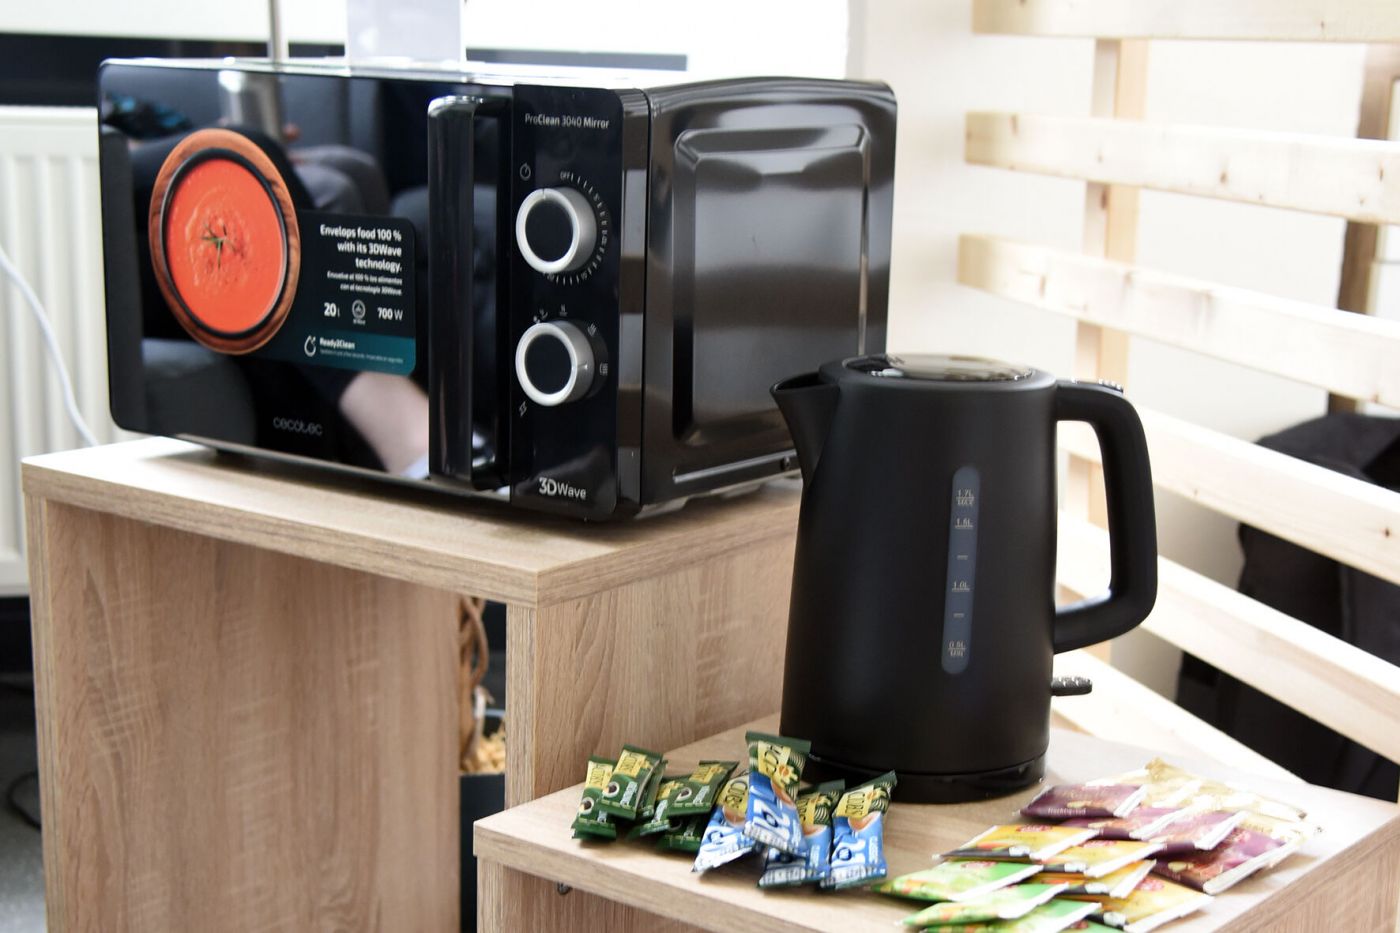 Mikrowelle, Wasserkocher sowie Teebeutel und Instant-Kaffeetütchen auf Regal. (Foto: FH Münster/Stefanie Gosejohann)